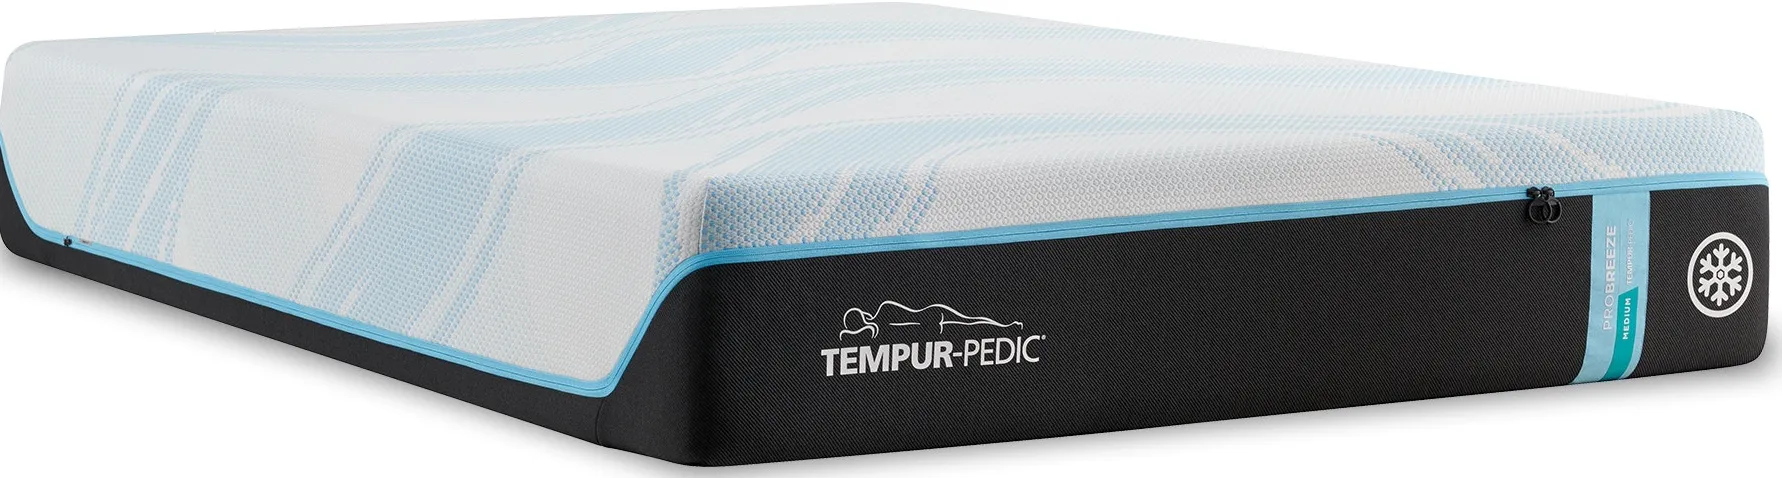 Tempur-Pedic Tempur-ProBreeze Queen Medium Mattress Only